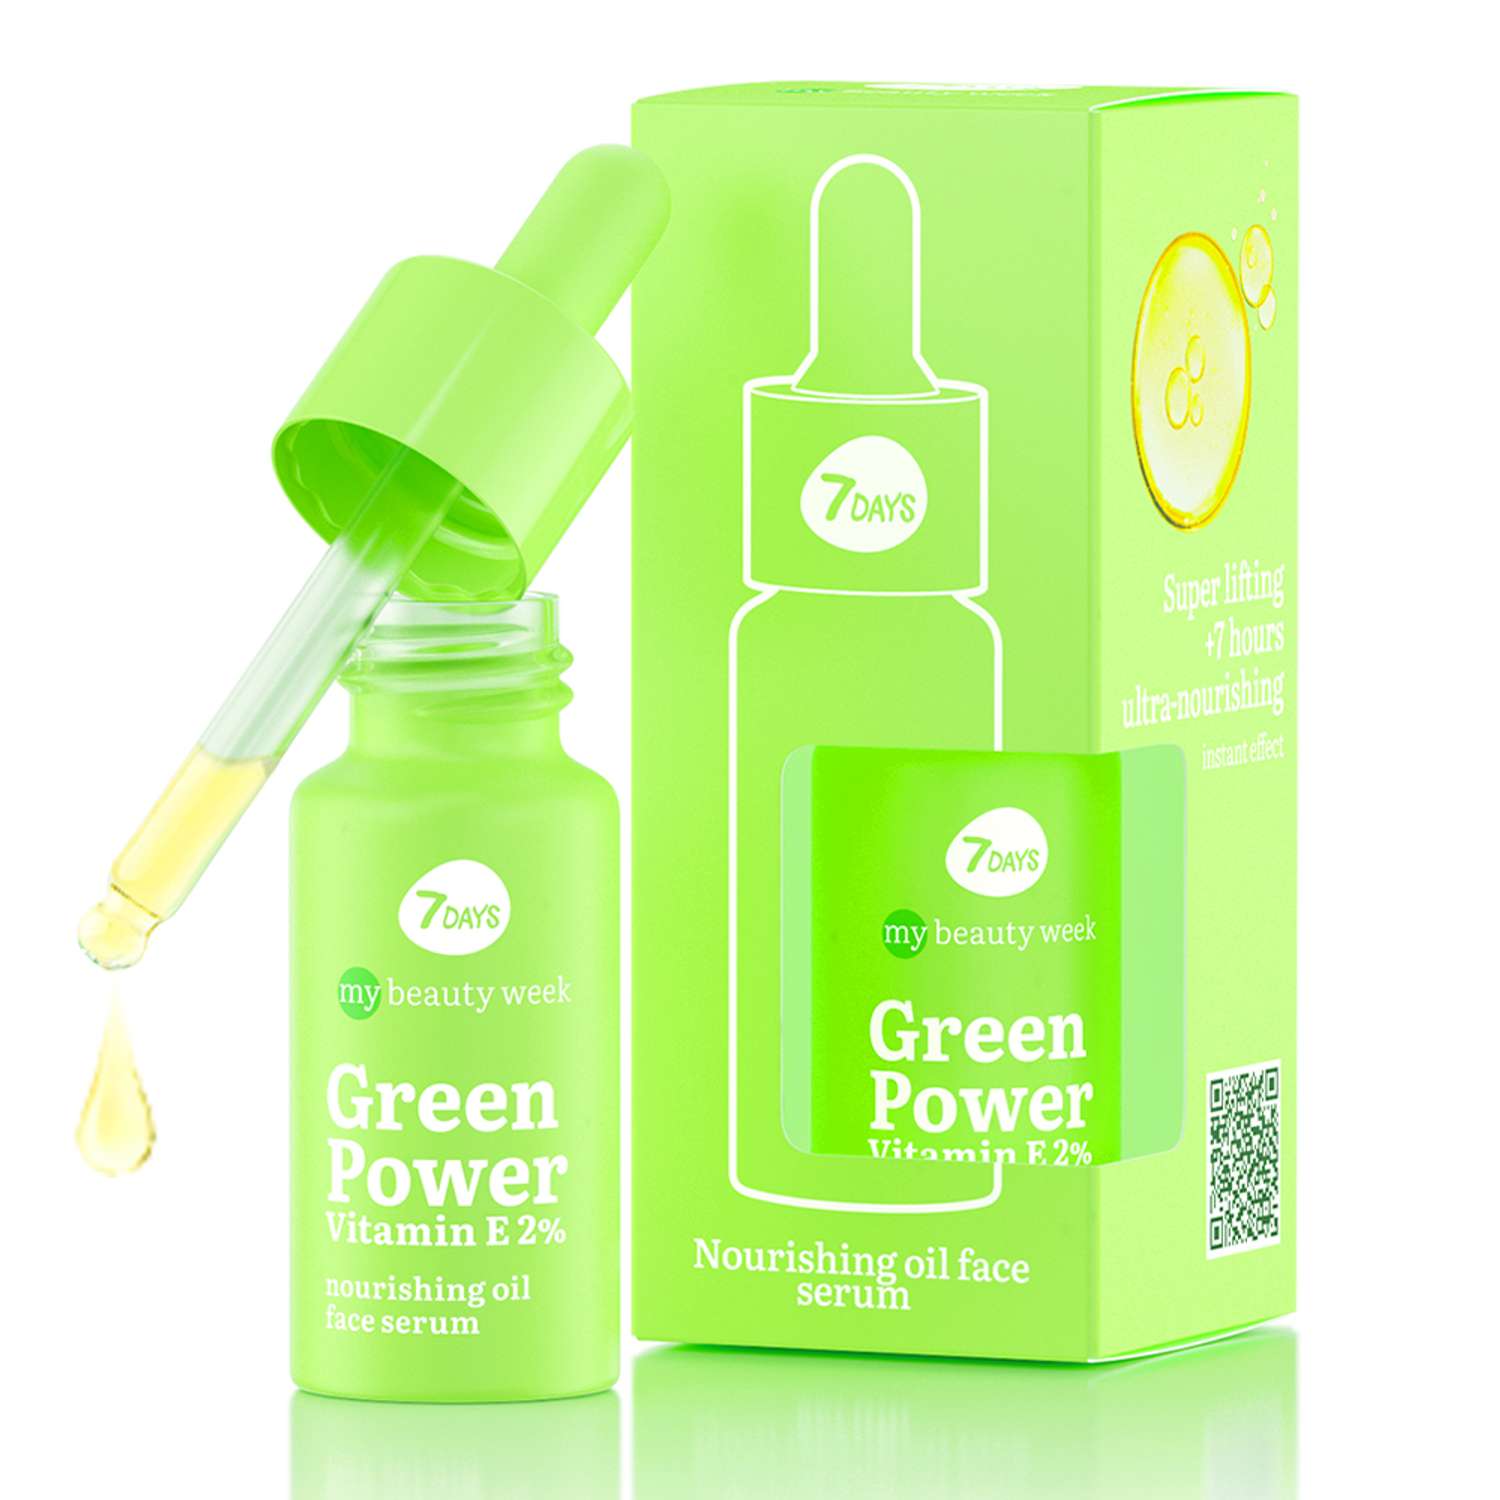 Сыворотка для лица 7DAYS Green power vitamin Е 2% питательная - фото 2